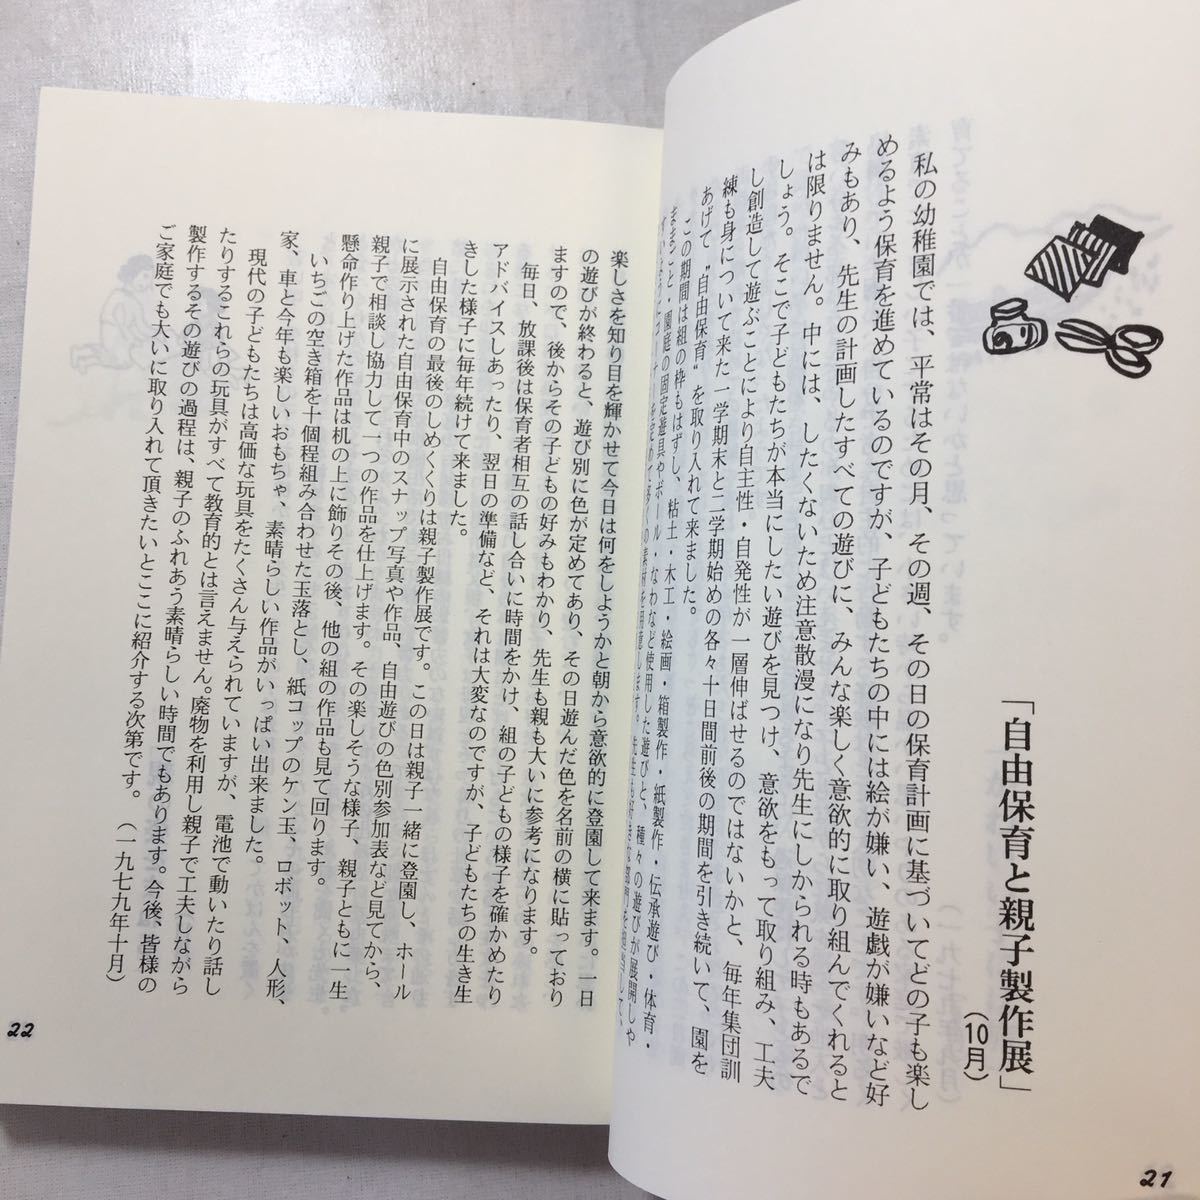 zaa-253♪母子草 (1984年) 並川 明子 (著) 神戸幼児教育センター 古書, 1984/7/1_画像6